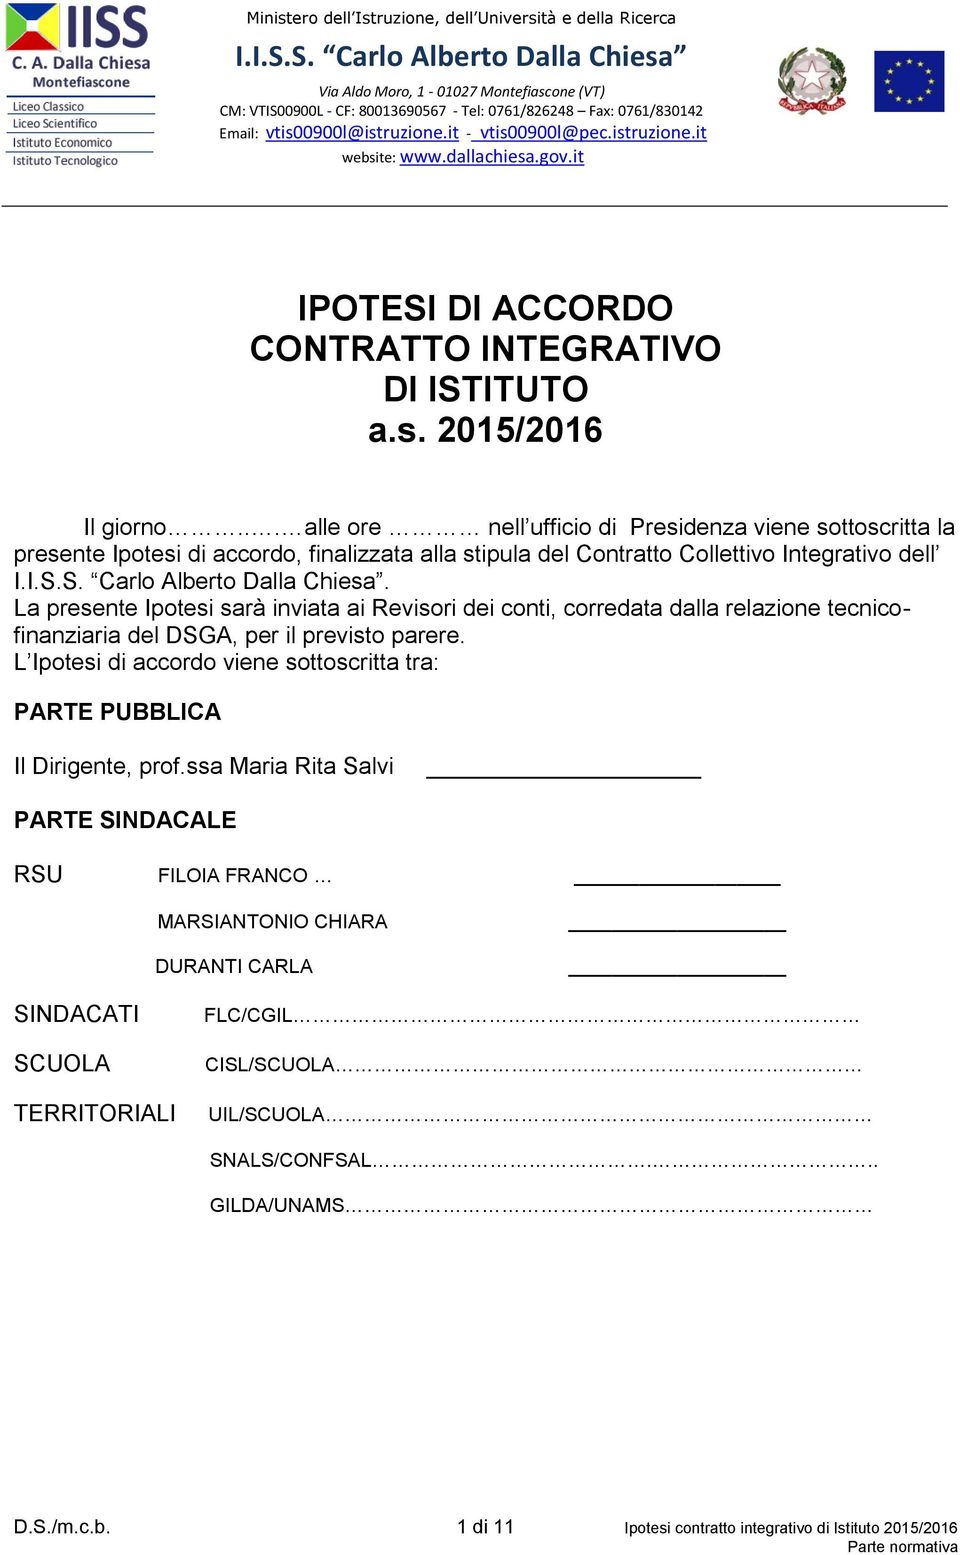 istruzione.it website: www.dallachiesa.gov.it IPOTESI DI ACCORDO CONTRATTO INTEGRATIVO DI ISTITUTO a.s. 2015/2016 Il giorno.